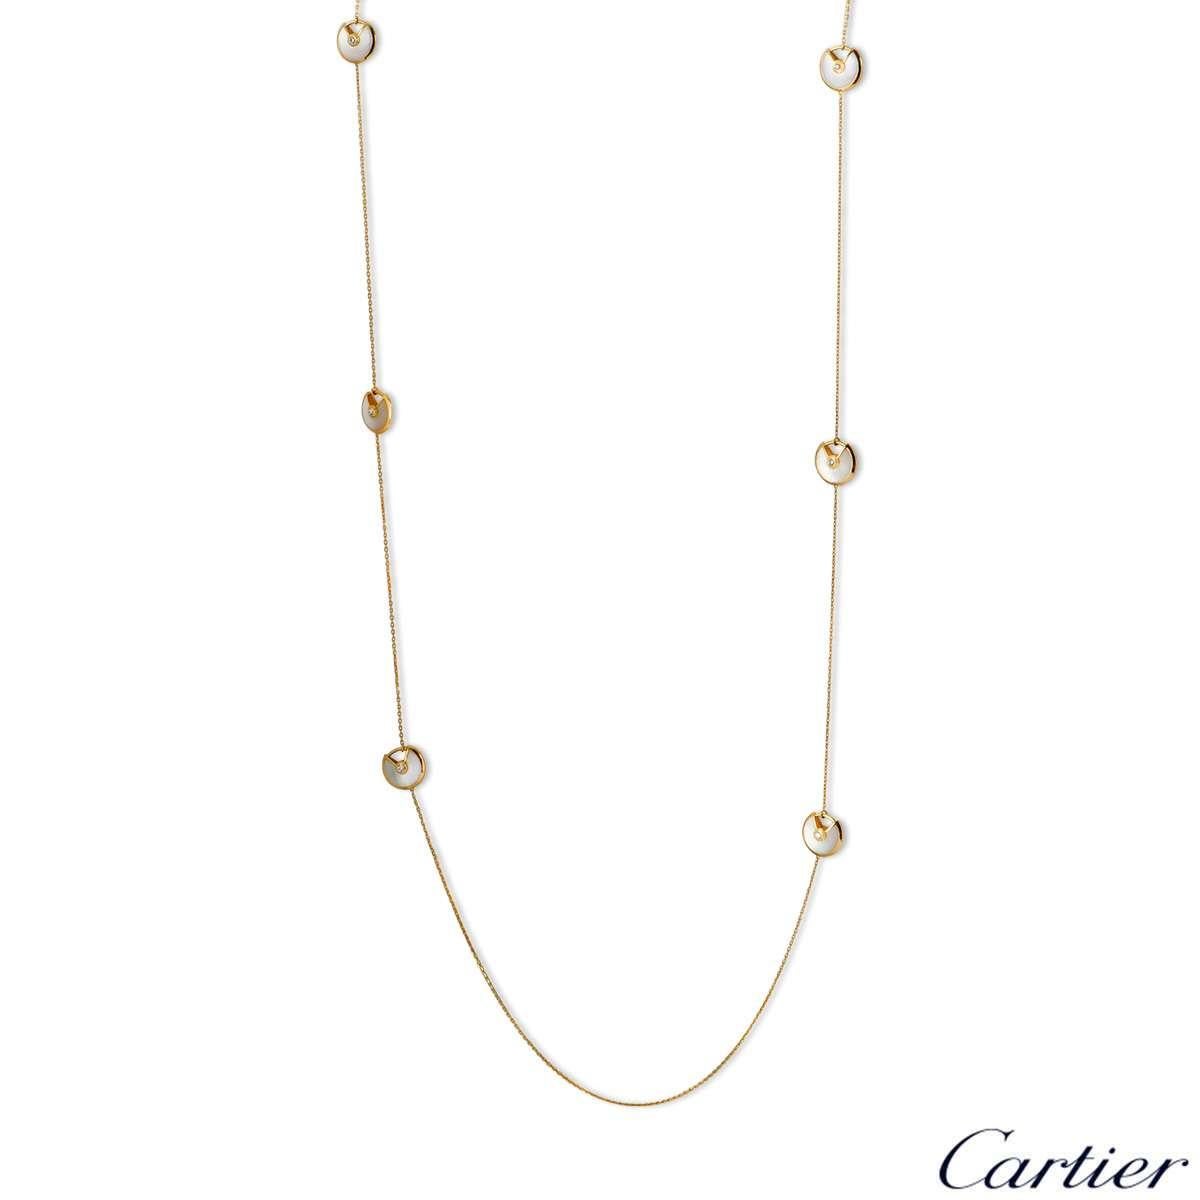 Pearl Amulette de Cartier Necklace 